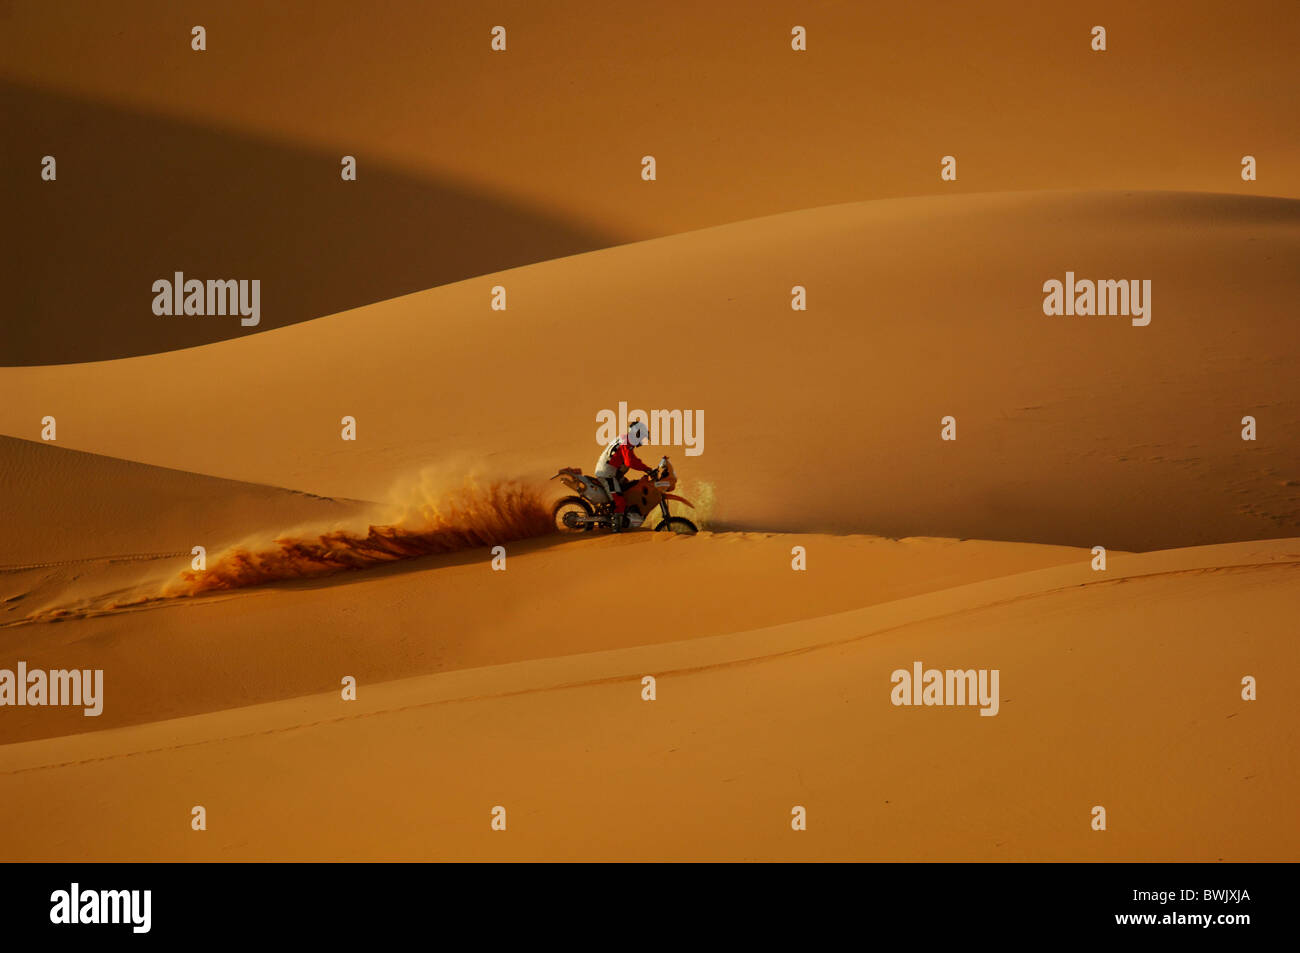 Offroad motocicletta Motocicletta motociclista avventura Erg Chebbi dune di sabbia del deserto deserto di sabbia Merzouga Marocco Africa del Nord Foto Stock